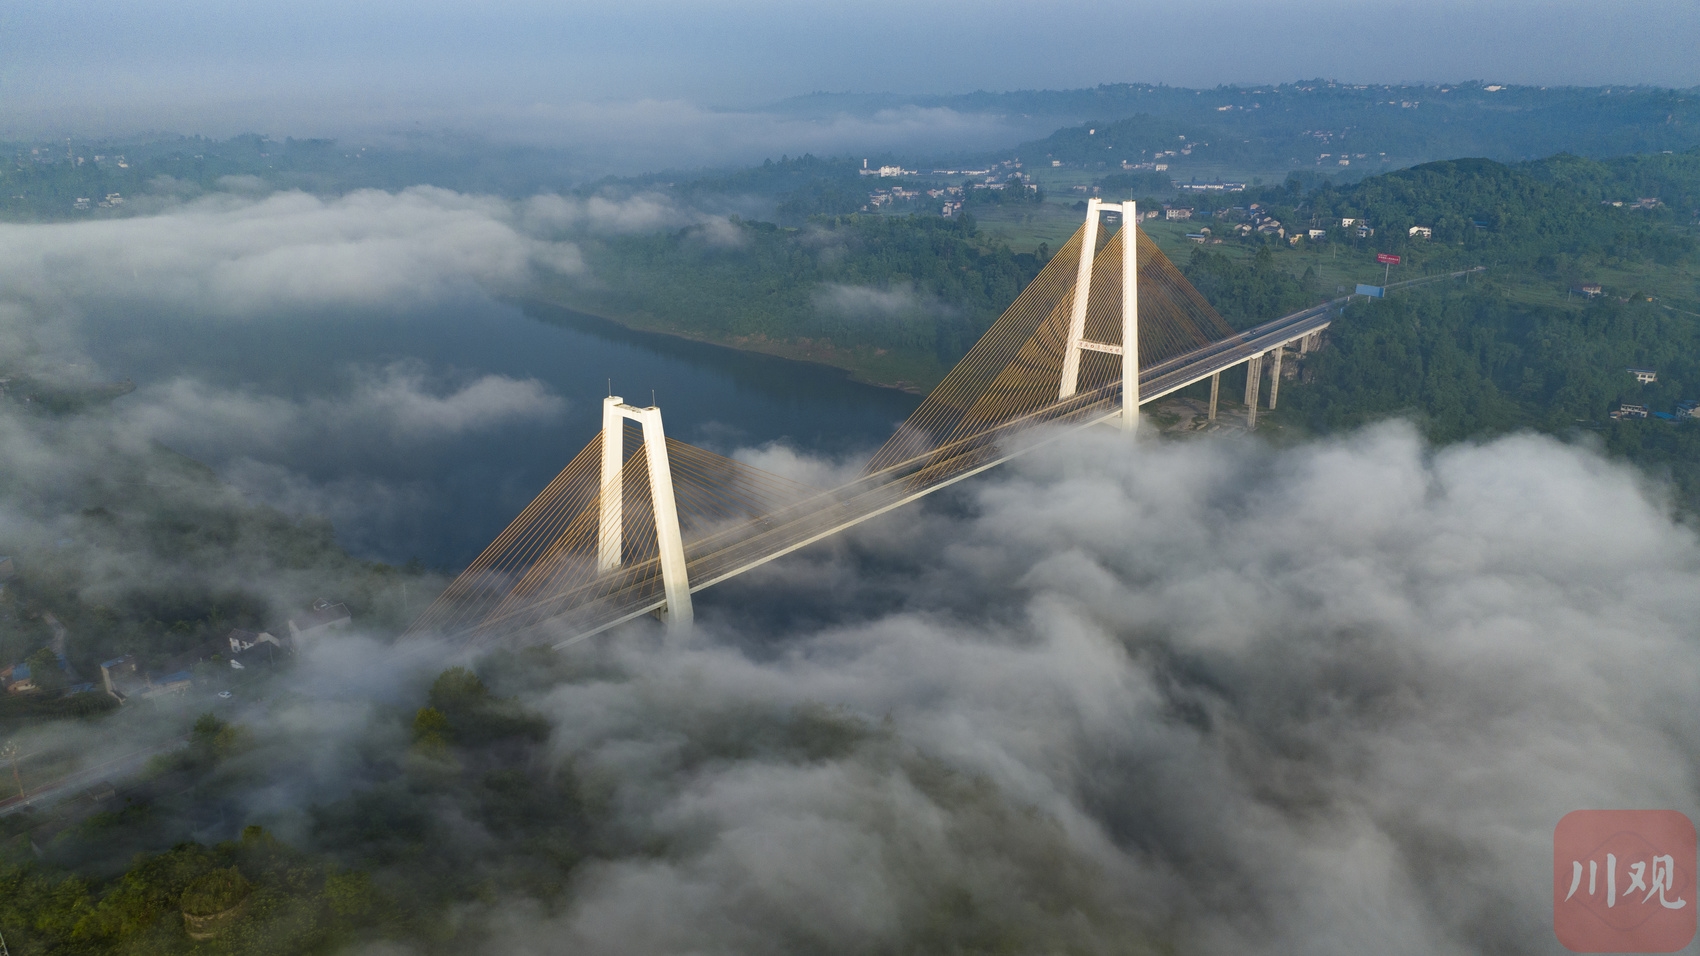 在建世界最大跨径拱桥天峨龙滩特大桥实现毫米级精准合龙 建设技术获专家肯定|中国工程院_新浪新闻